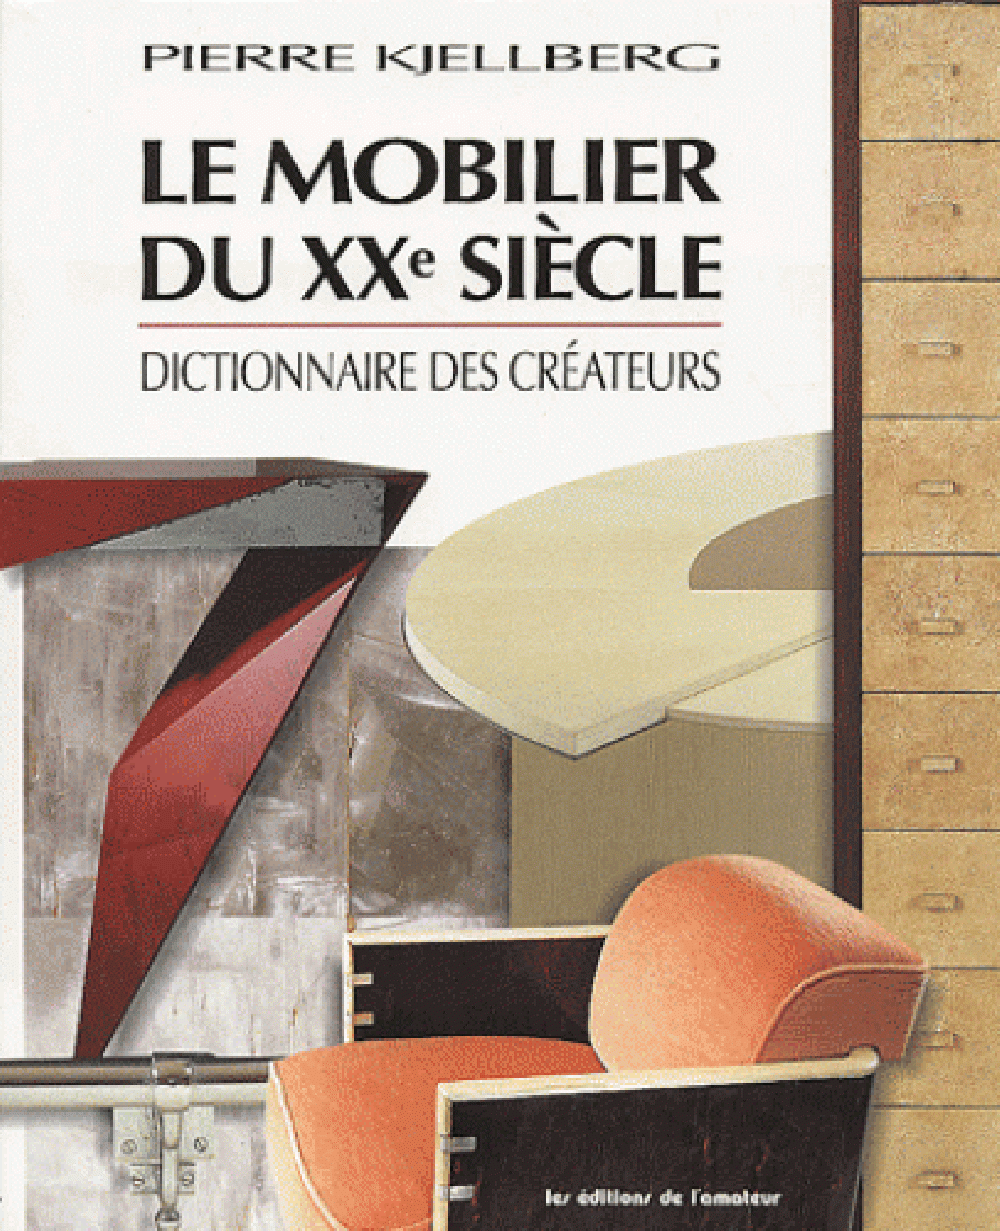 Le mobilier du XX siècle. Dictionnaire des créateurs.